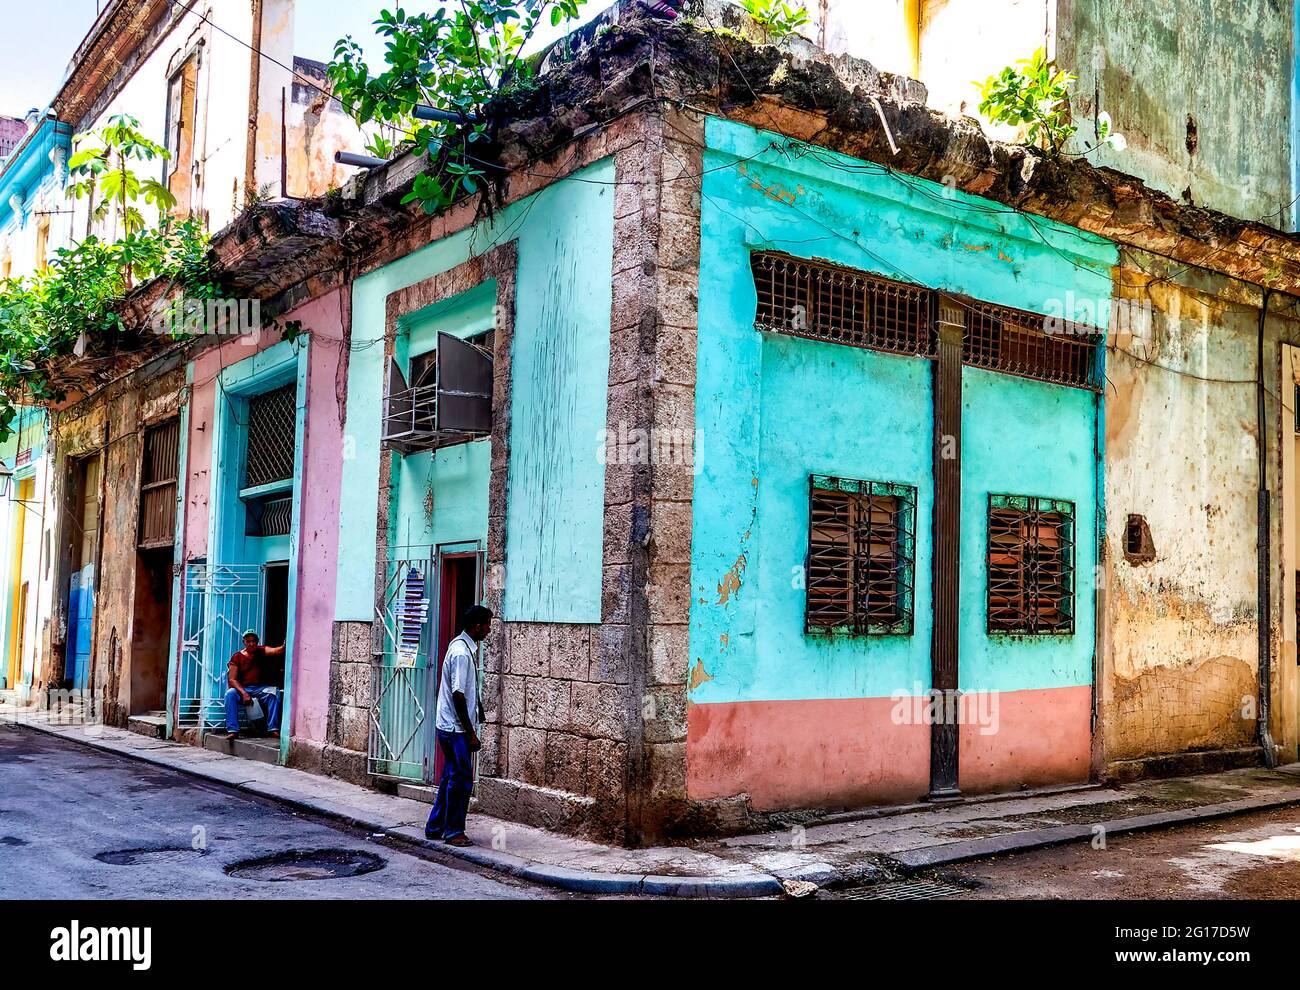 Angolo di strada in un quartiere povero di l'Avana, Cuba Foto Stock